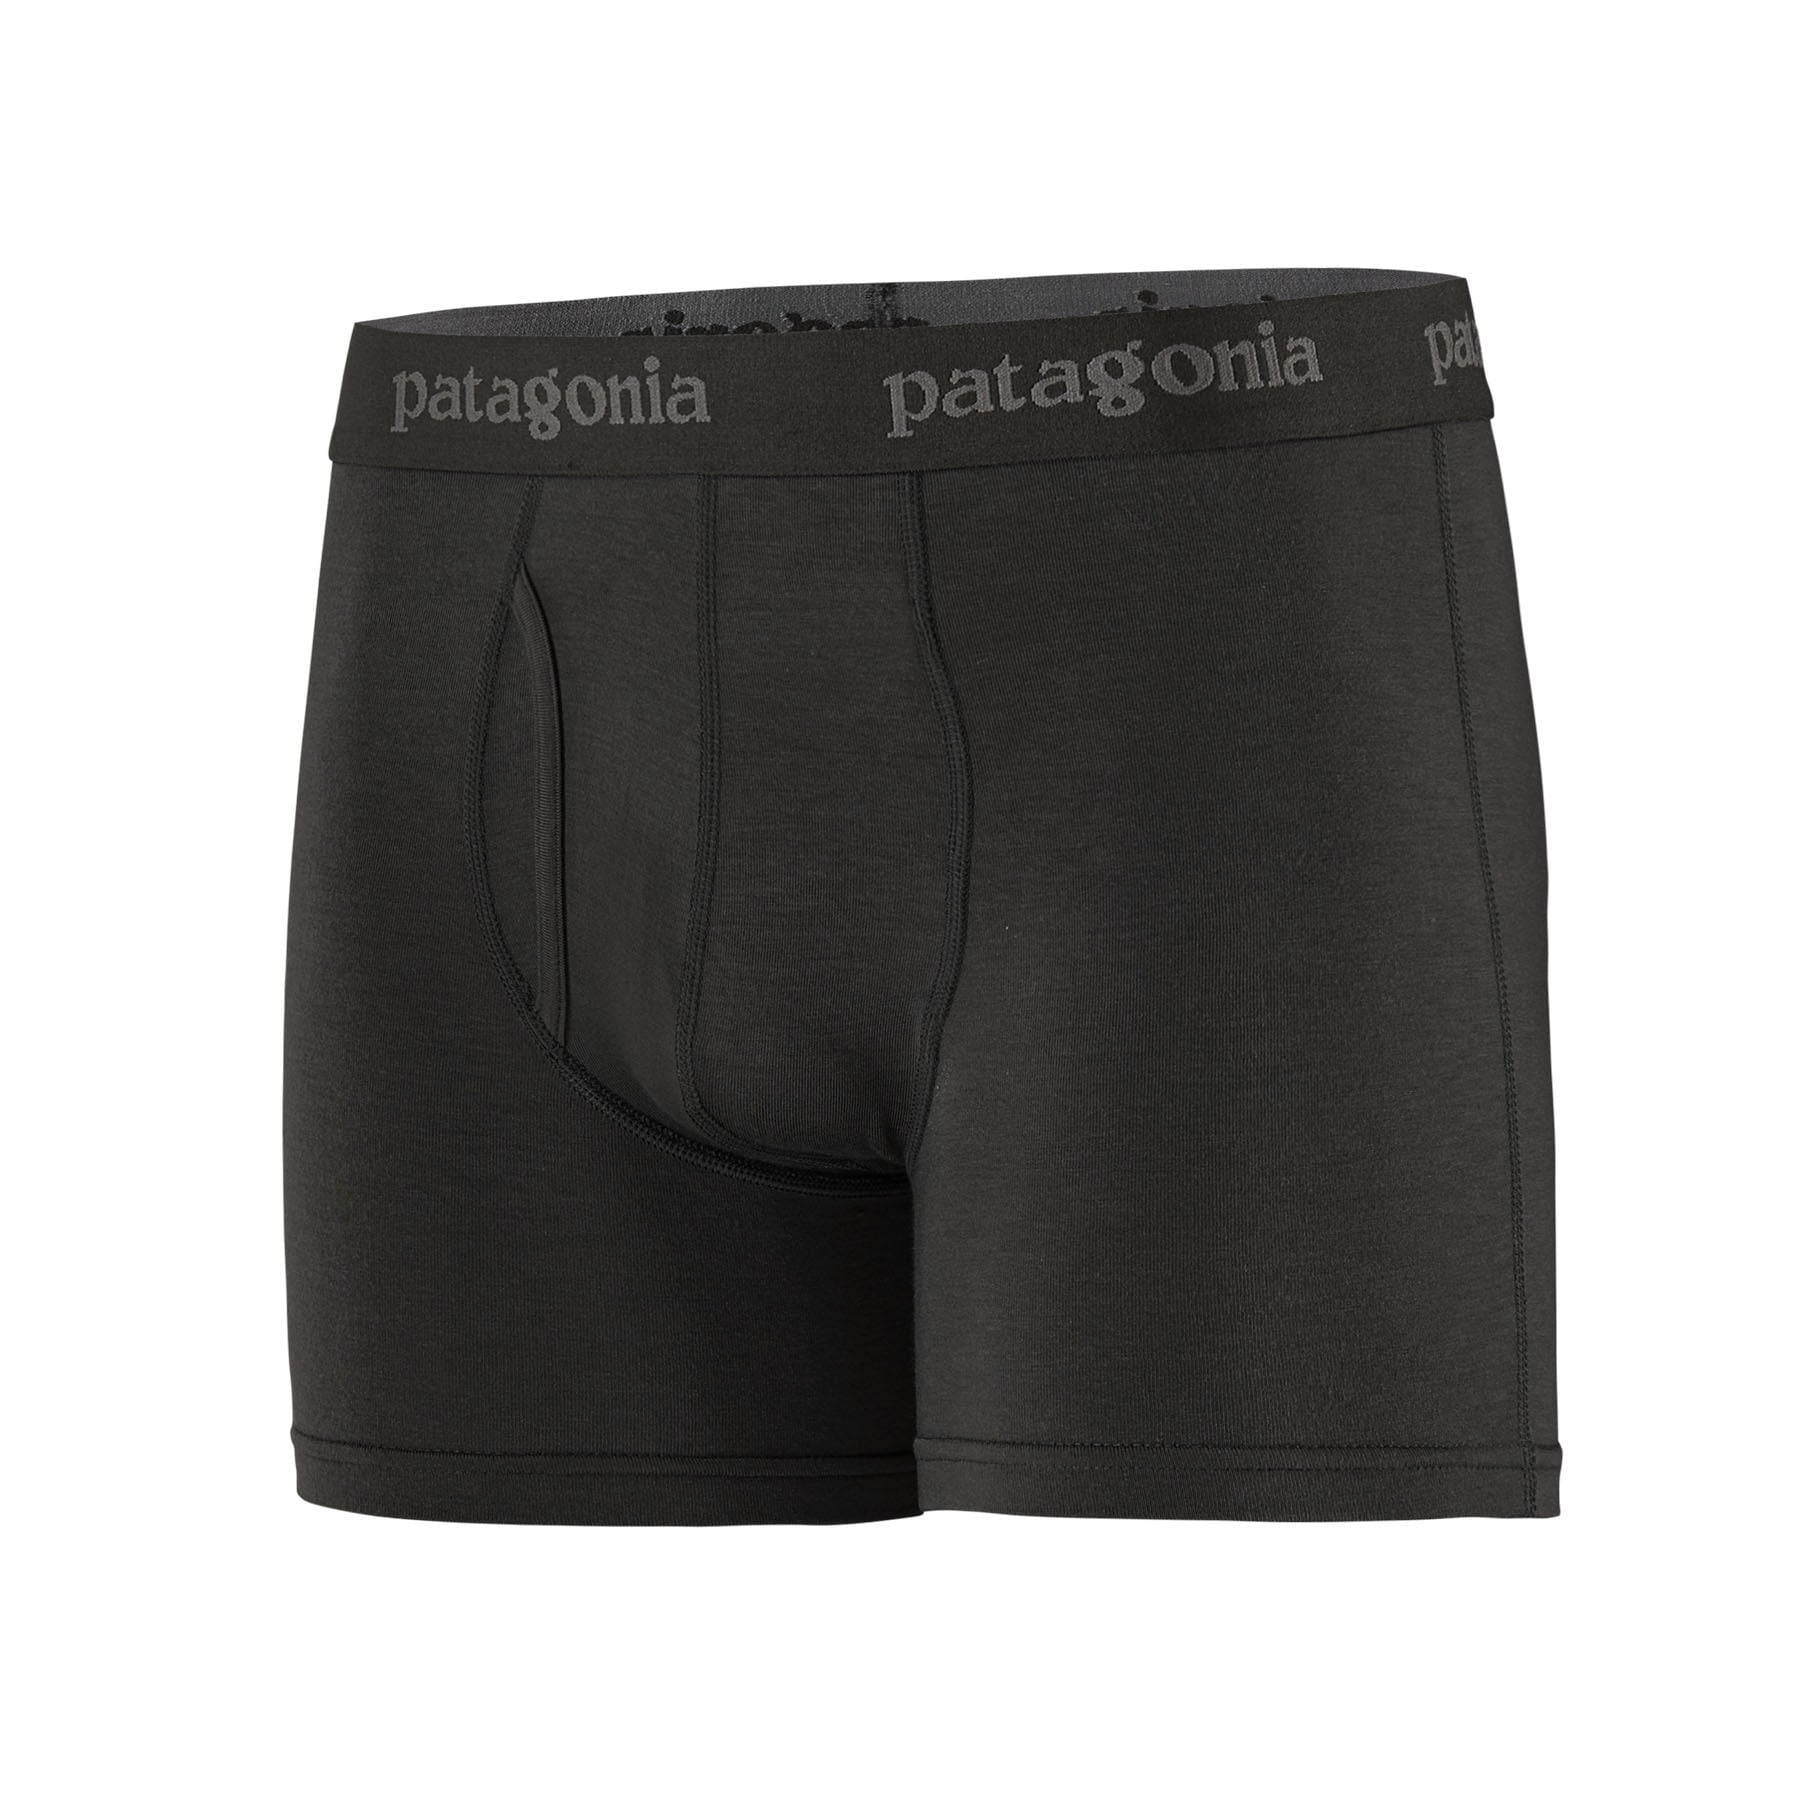 Patagonia Essential Boxer Briefs - 3" Herren Unterhose Patagonia 